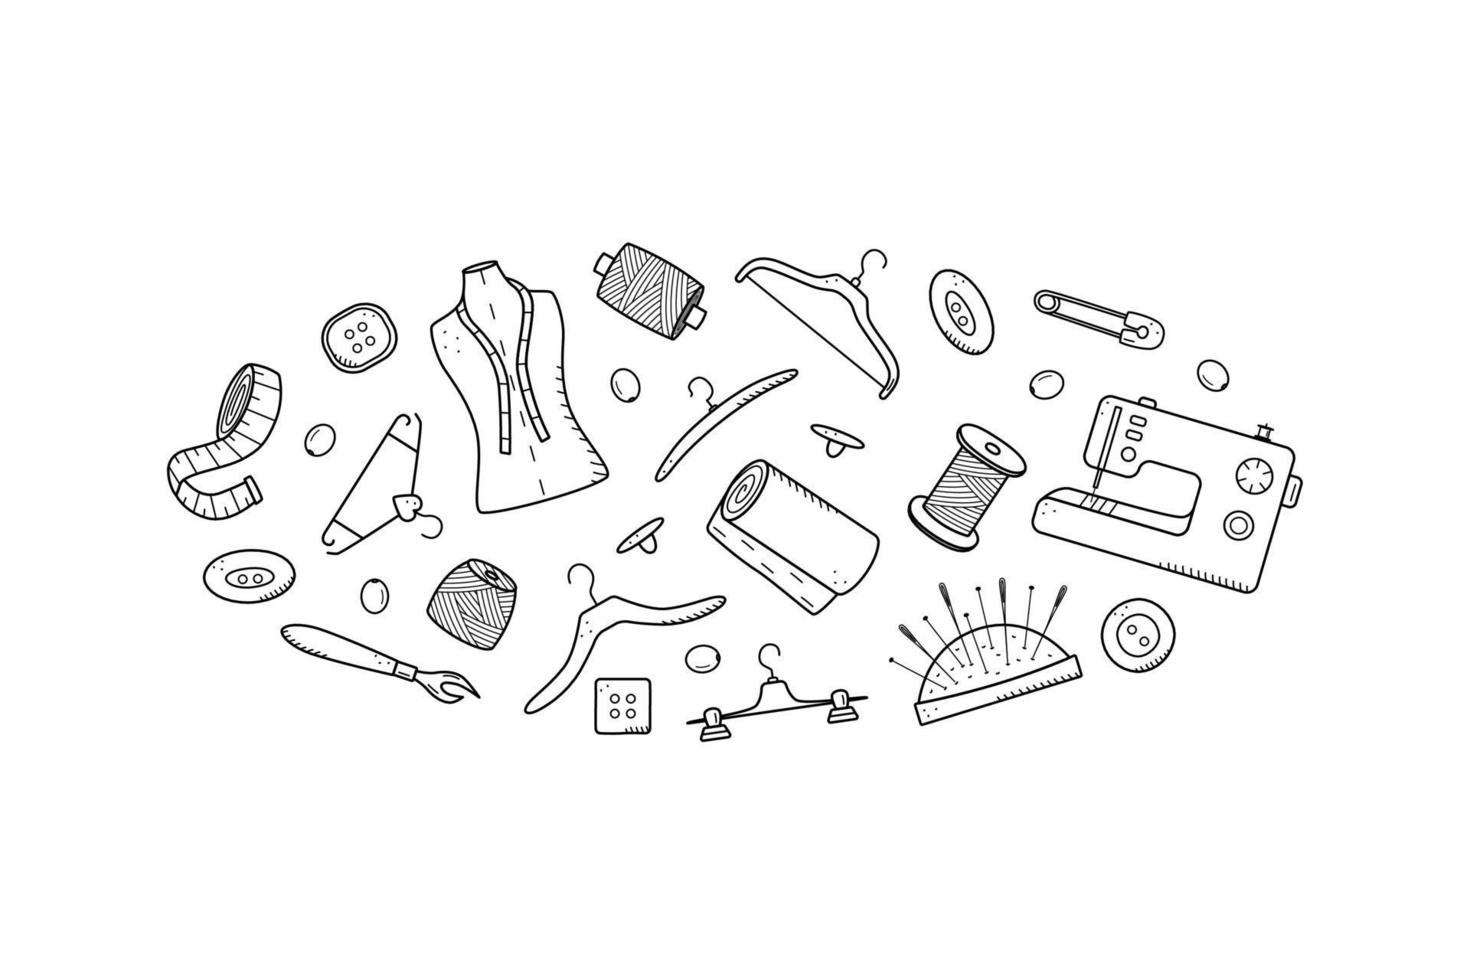 verktyg för sömnad och handarbete. doodle ikonuppsättning skräddarsy, vektor illustration tråd nålar skyltdocka symaskin galgar knappar